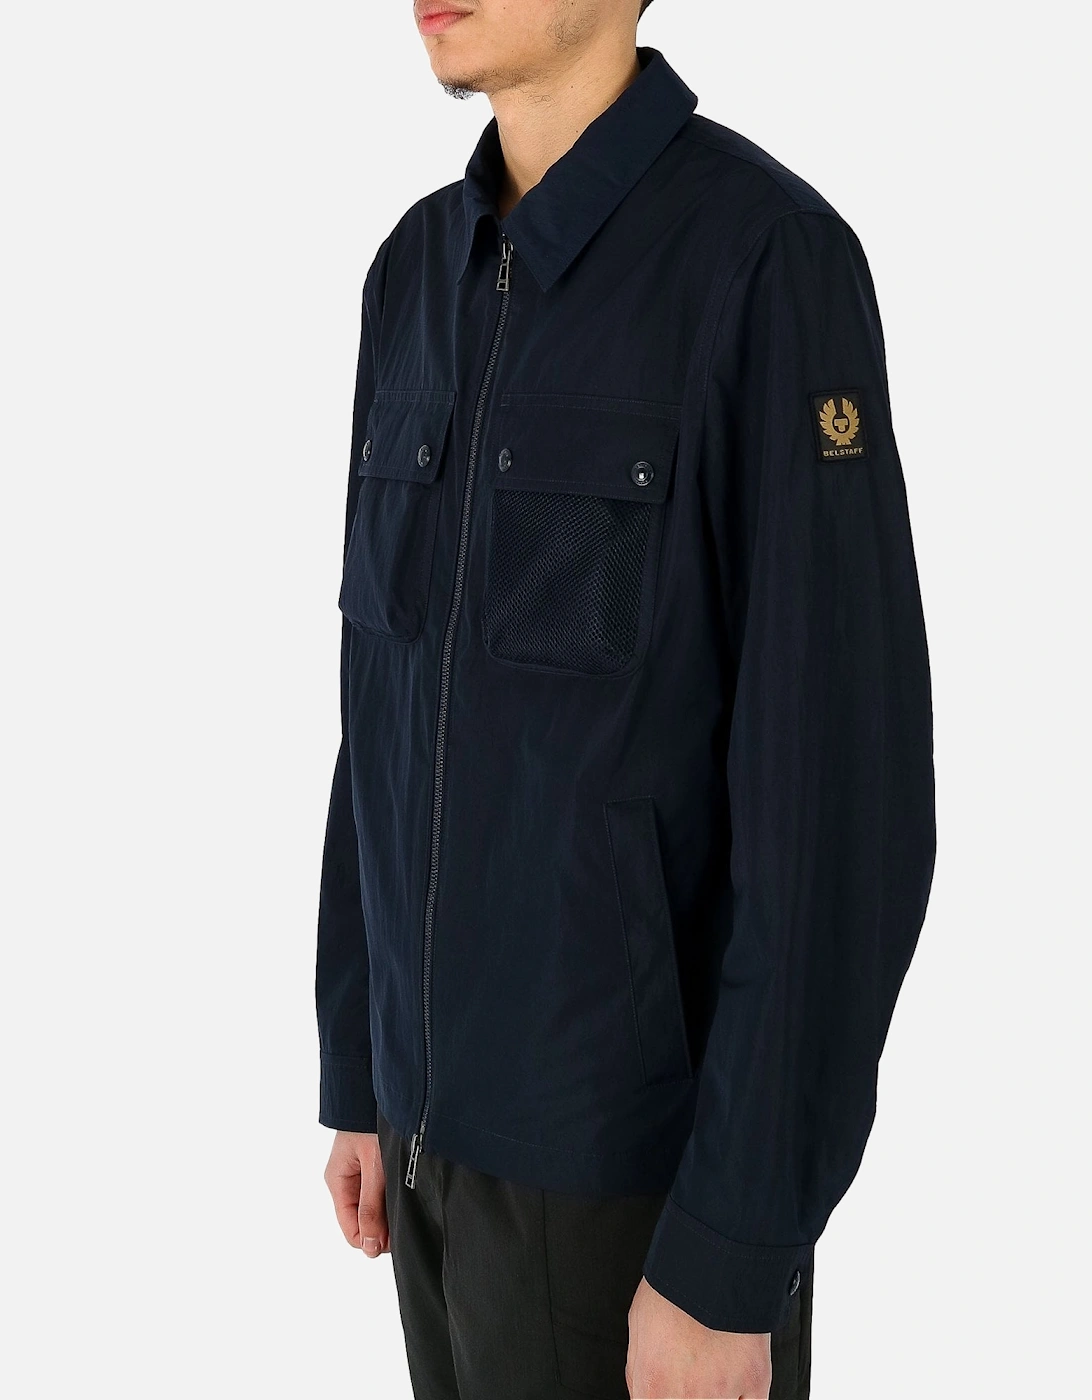 Outline Lightweight Mesh Pocket Navy Overshirt Jacket, 5 of 4